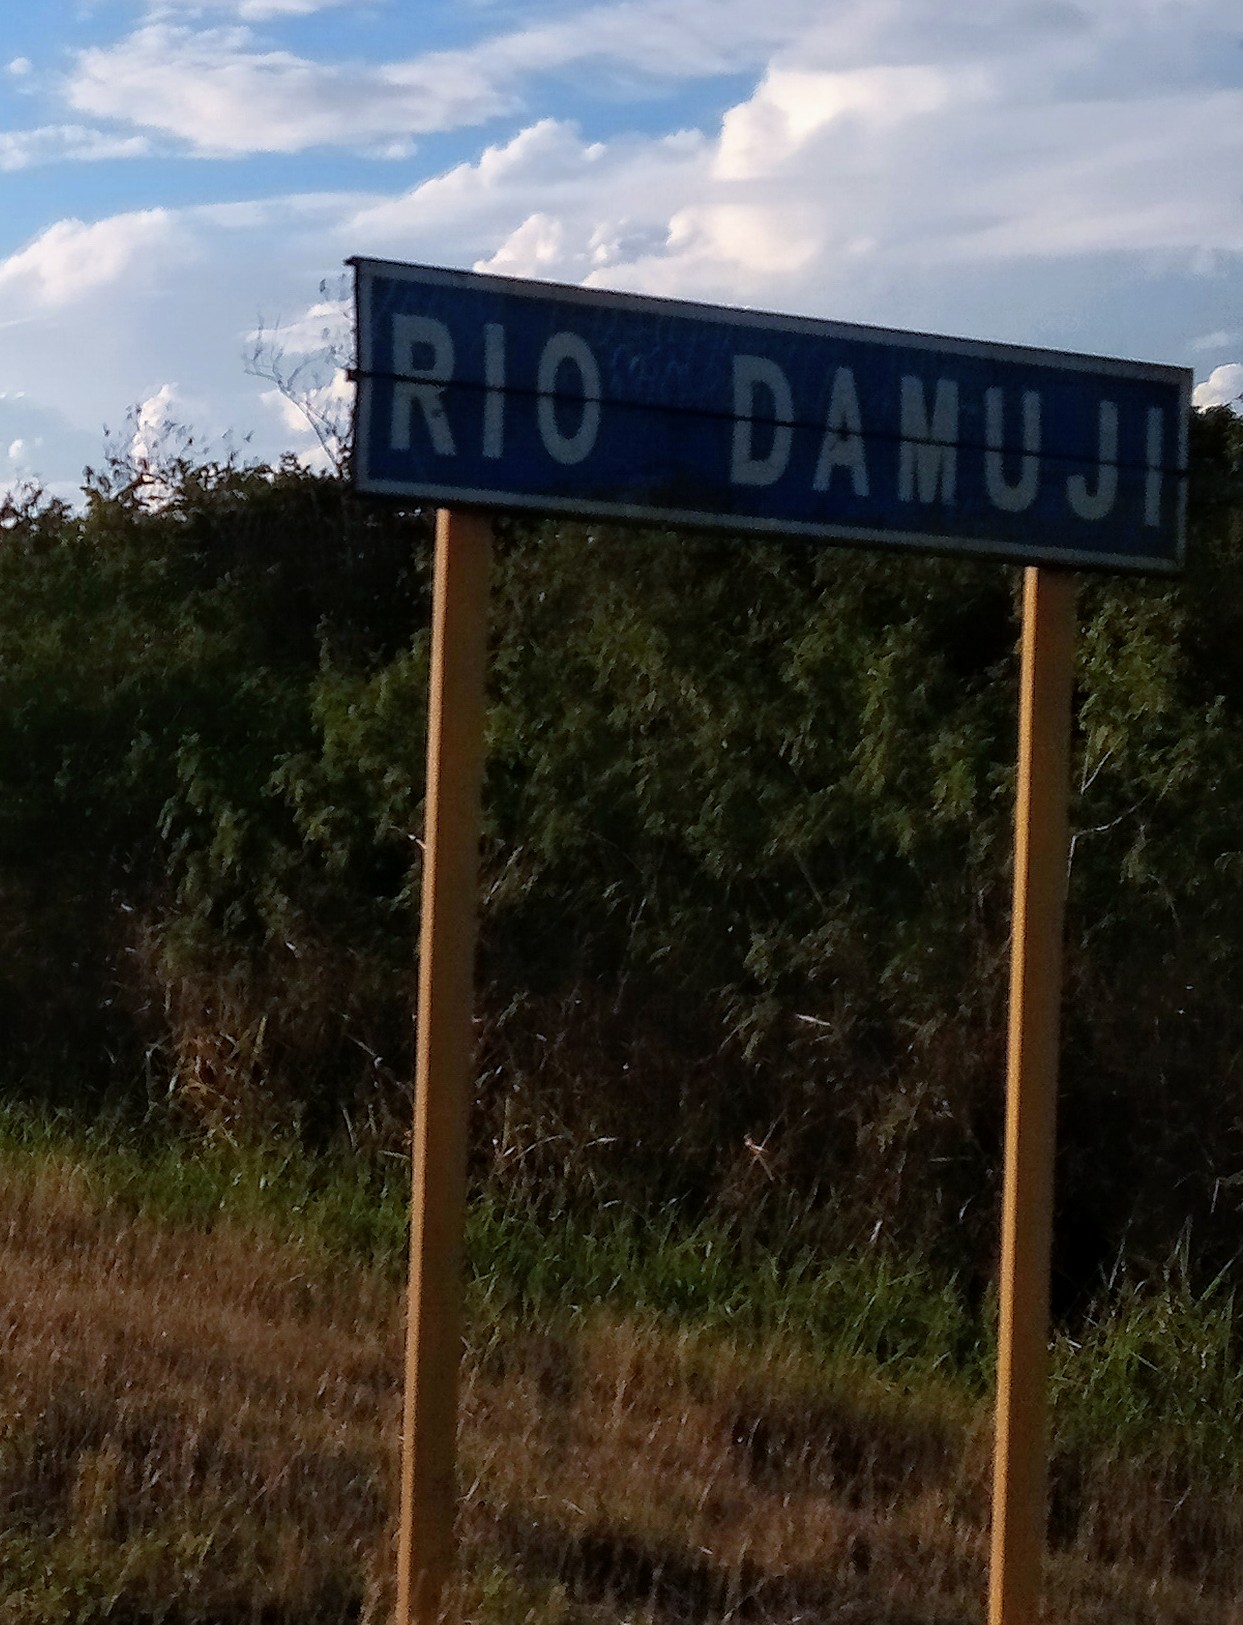 Rio Damuji, CF